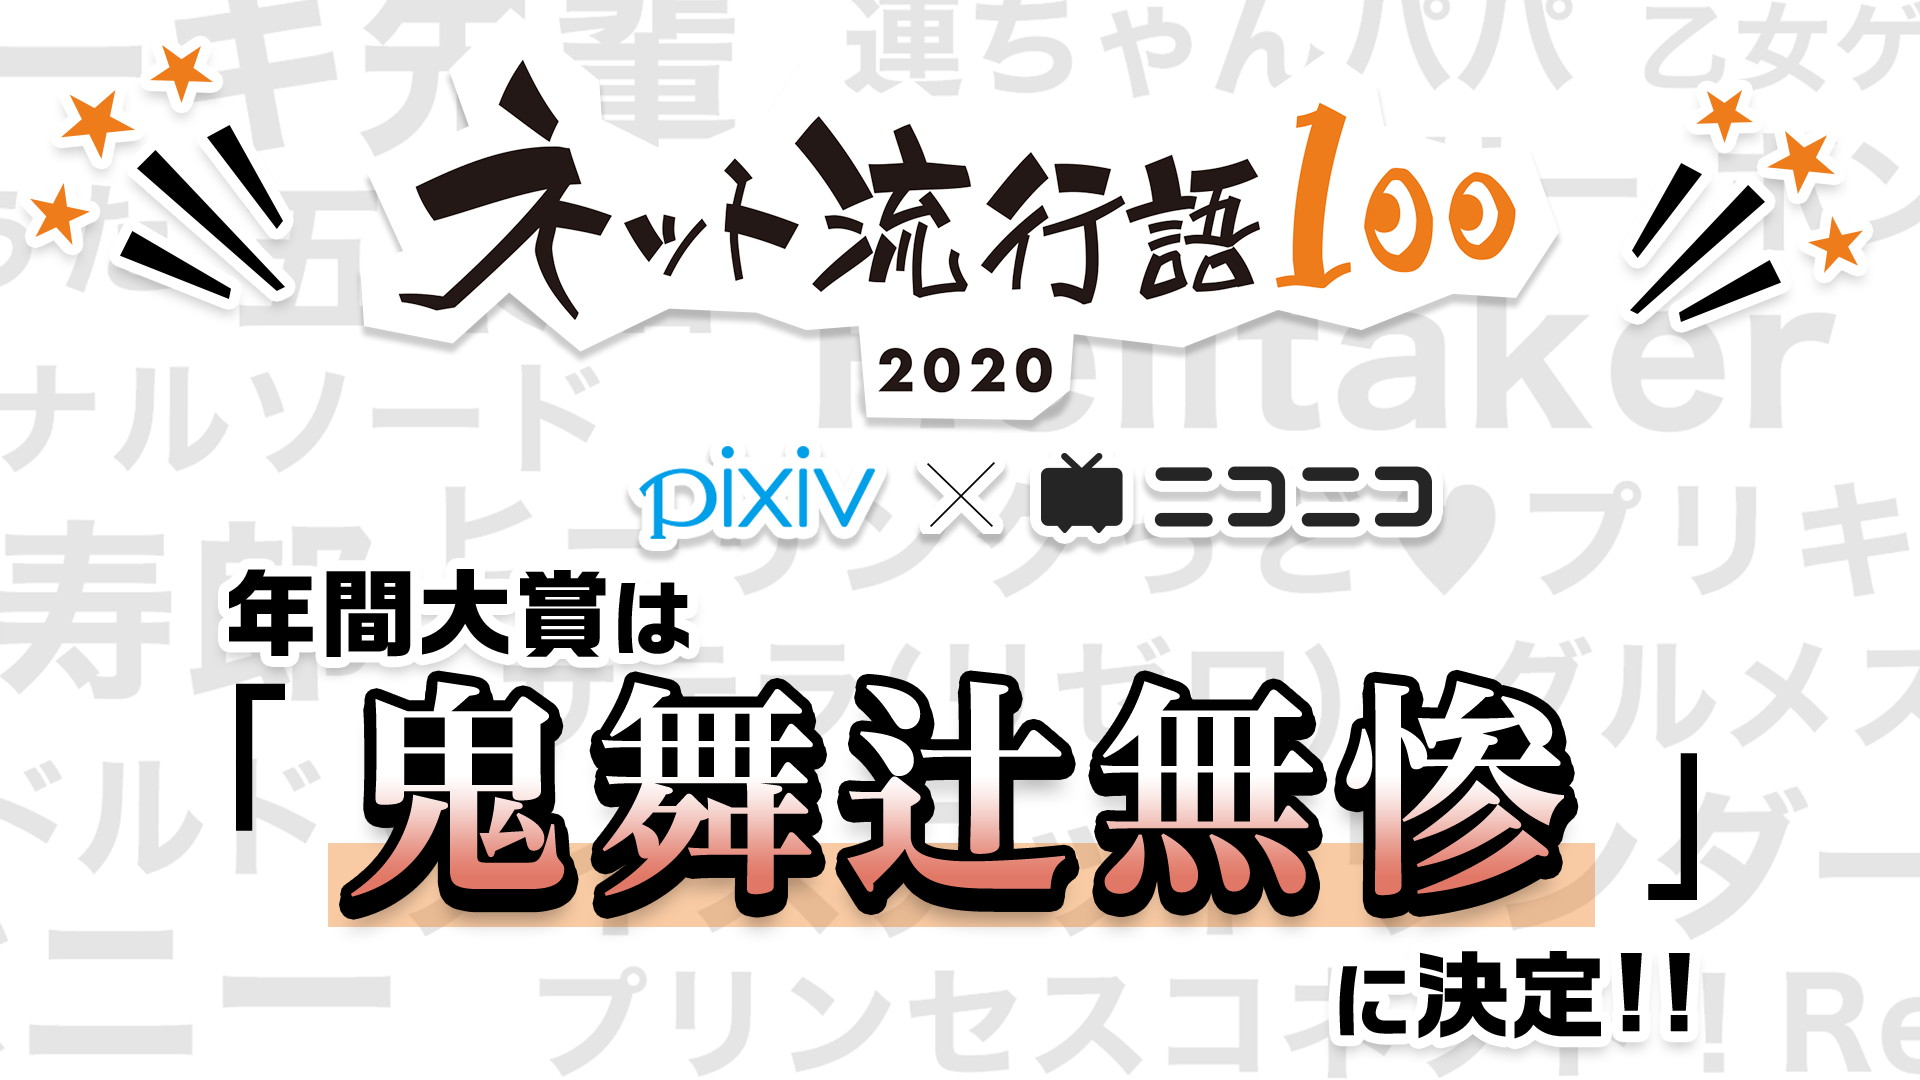 「ネット流行語100」2020 年間大賞は「鬼舞辻無惨(鬼滅の刃)」に決定!!